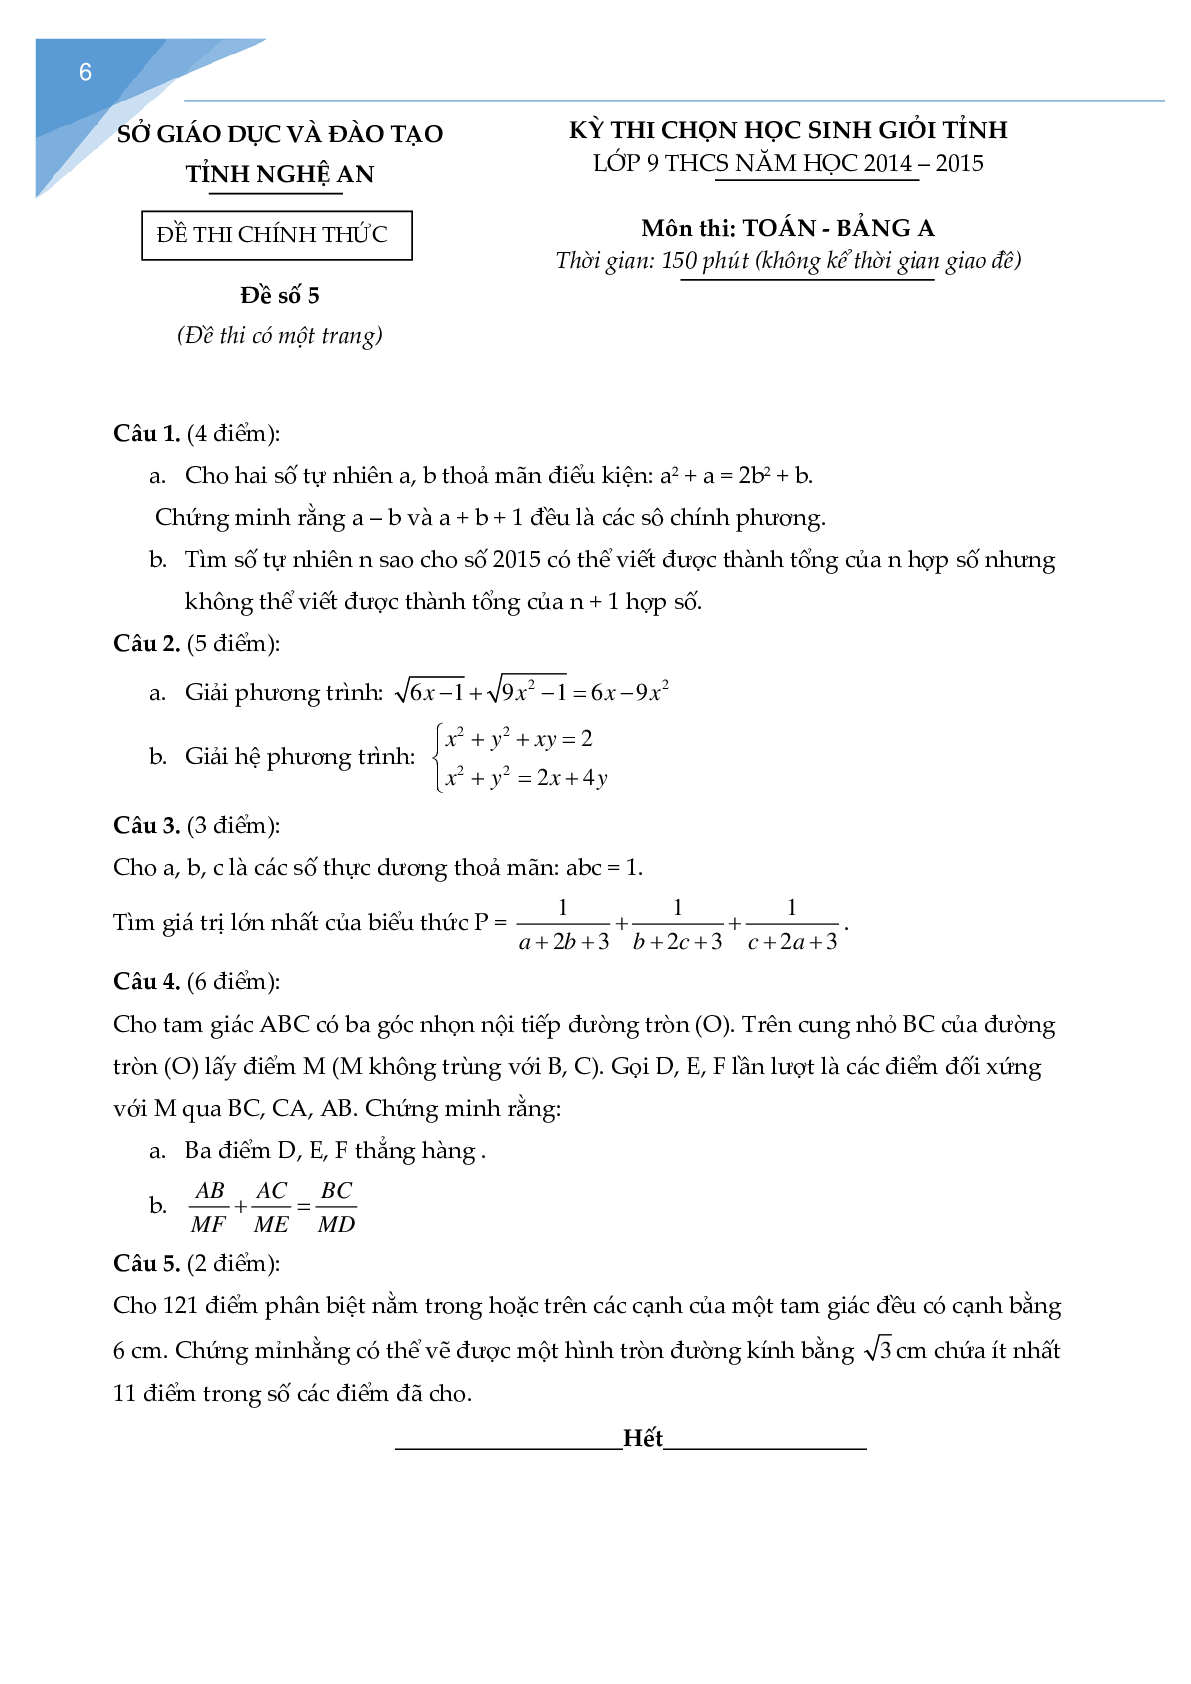 Bộ đề thi học sinh giỏi toán lớp 9 tỉnh Nghệ An (trang 5)